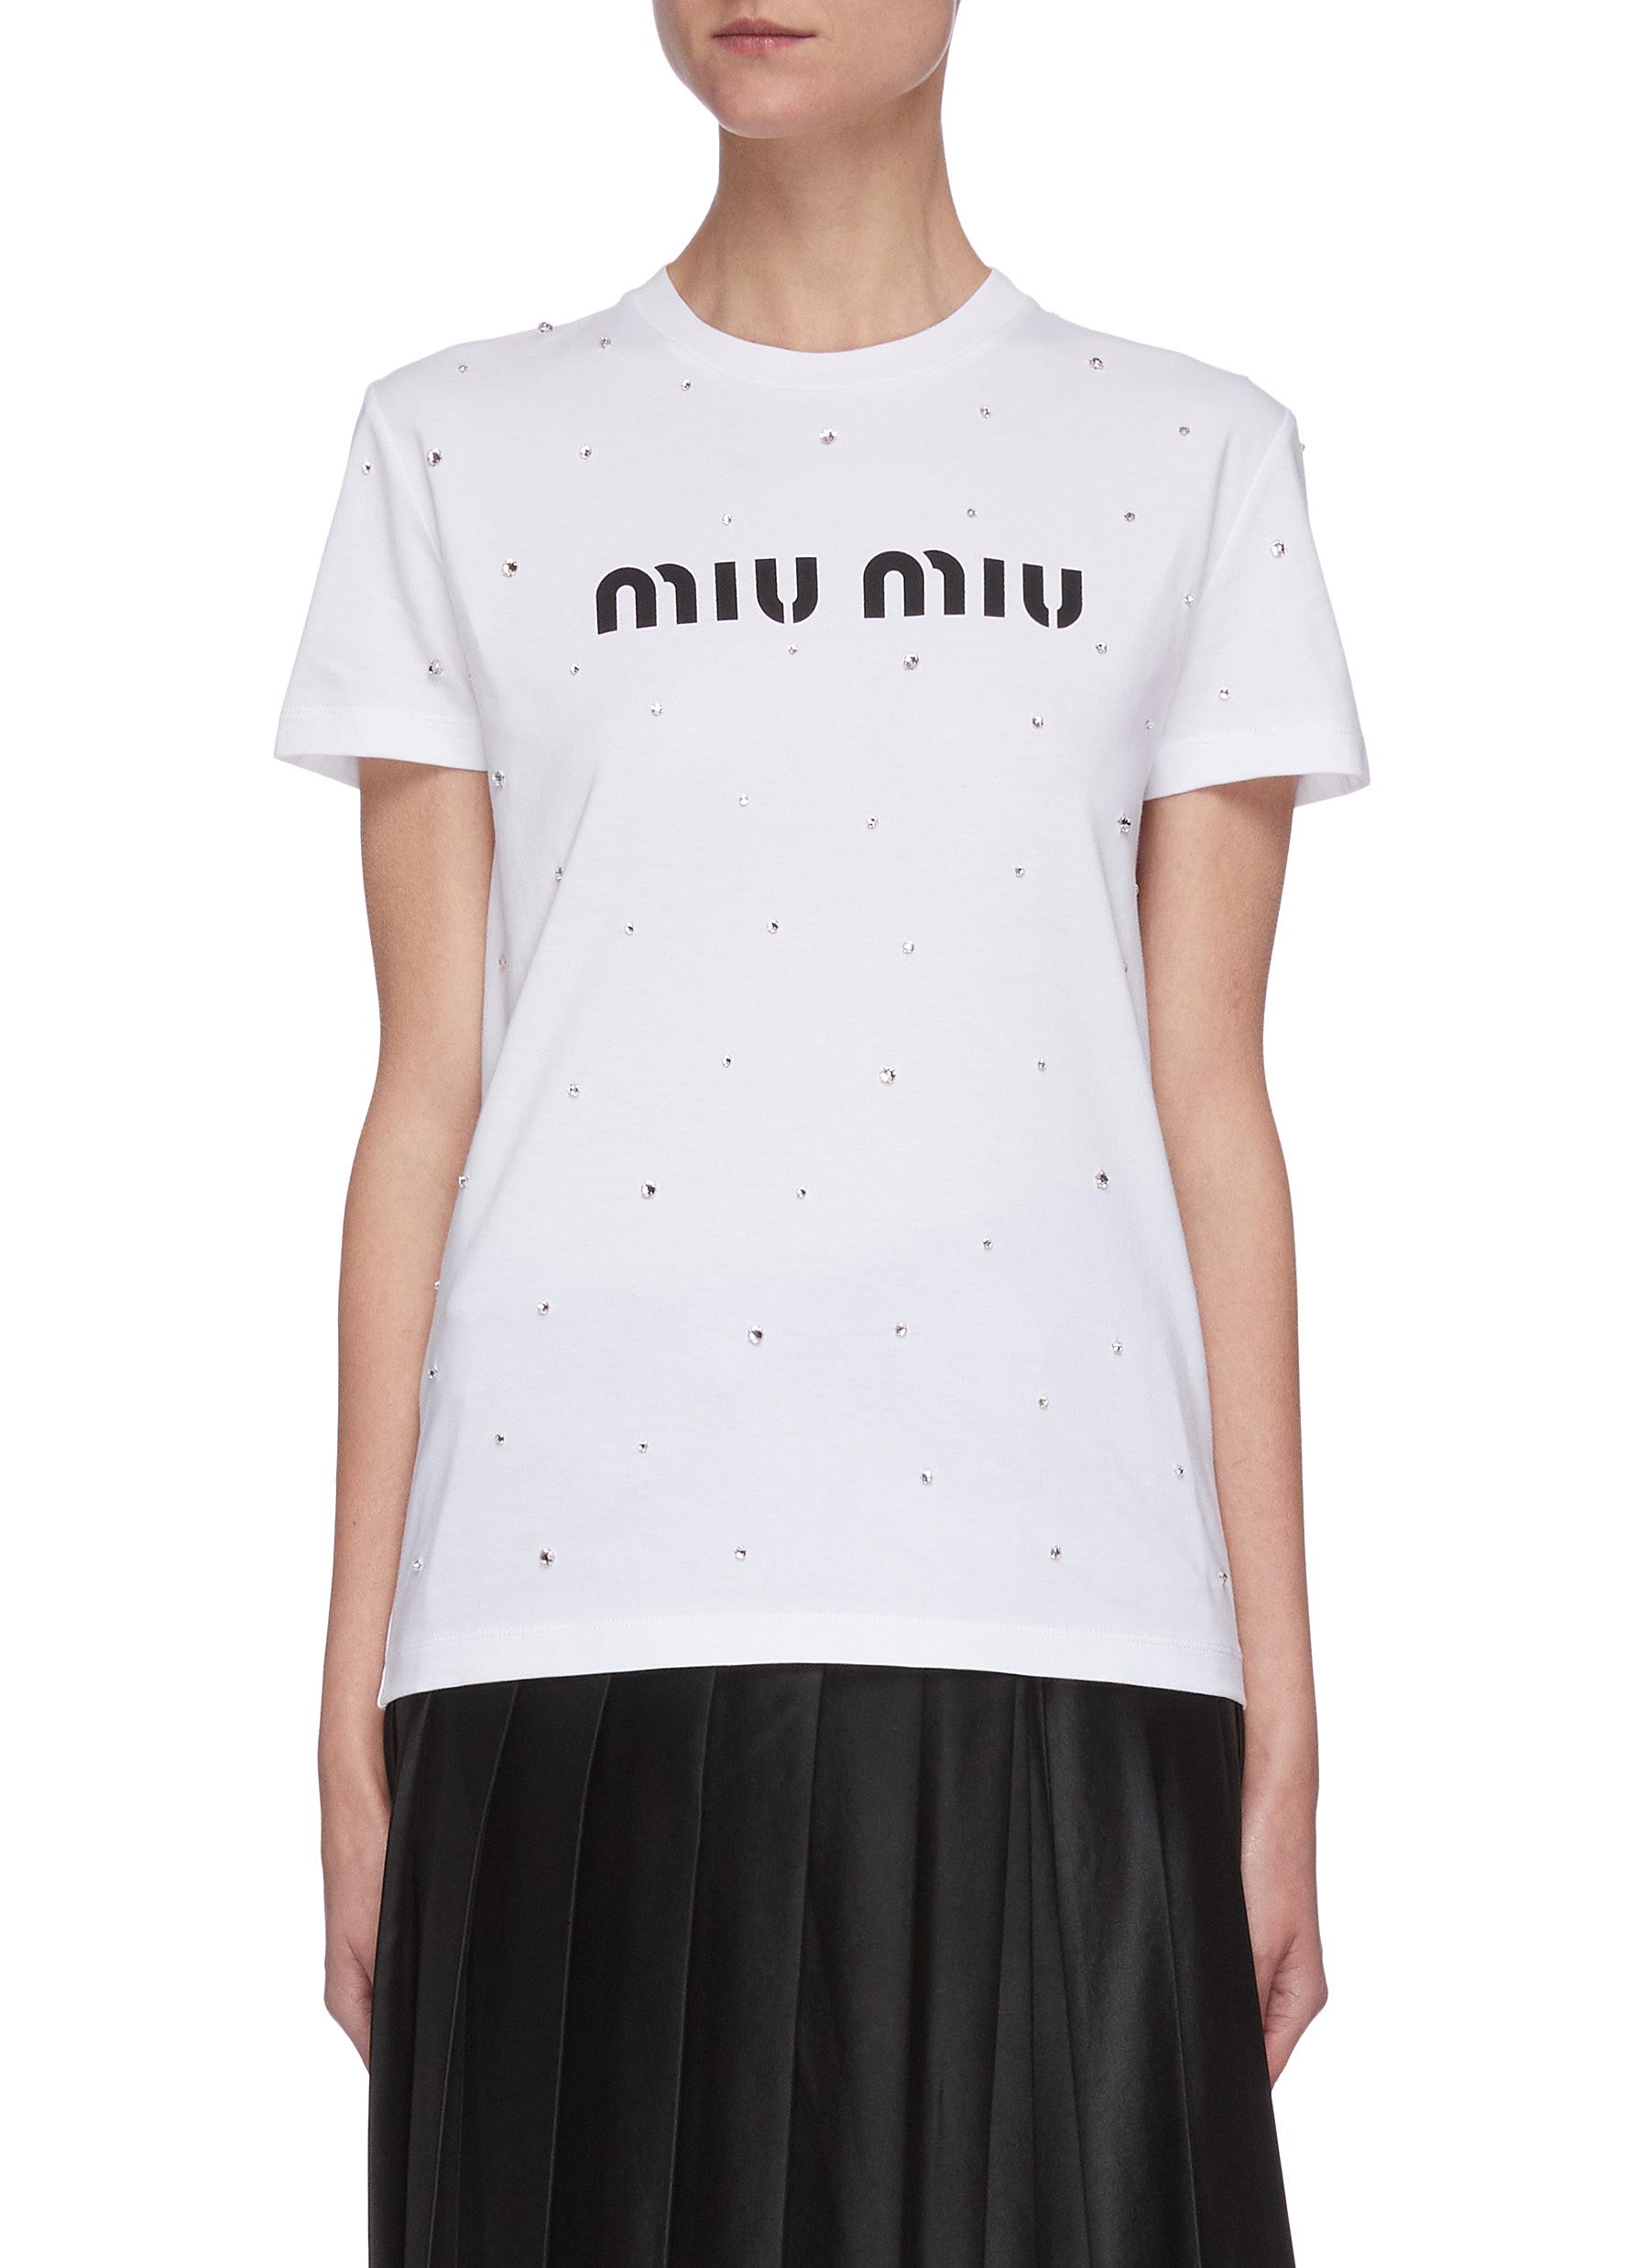 Miu Miu T Shirt Sale, 55% OFF | campingcanyelles.com